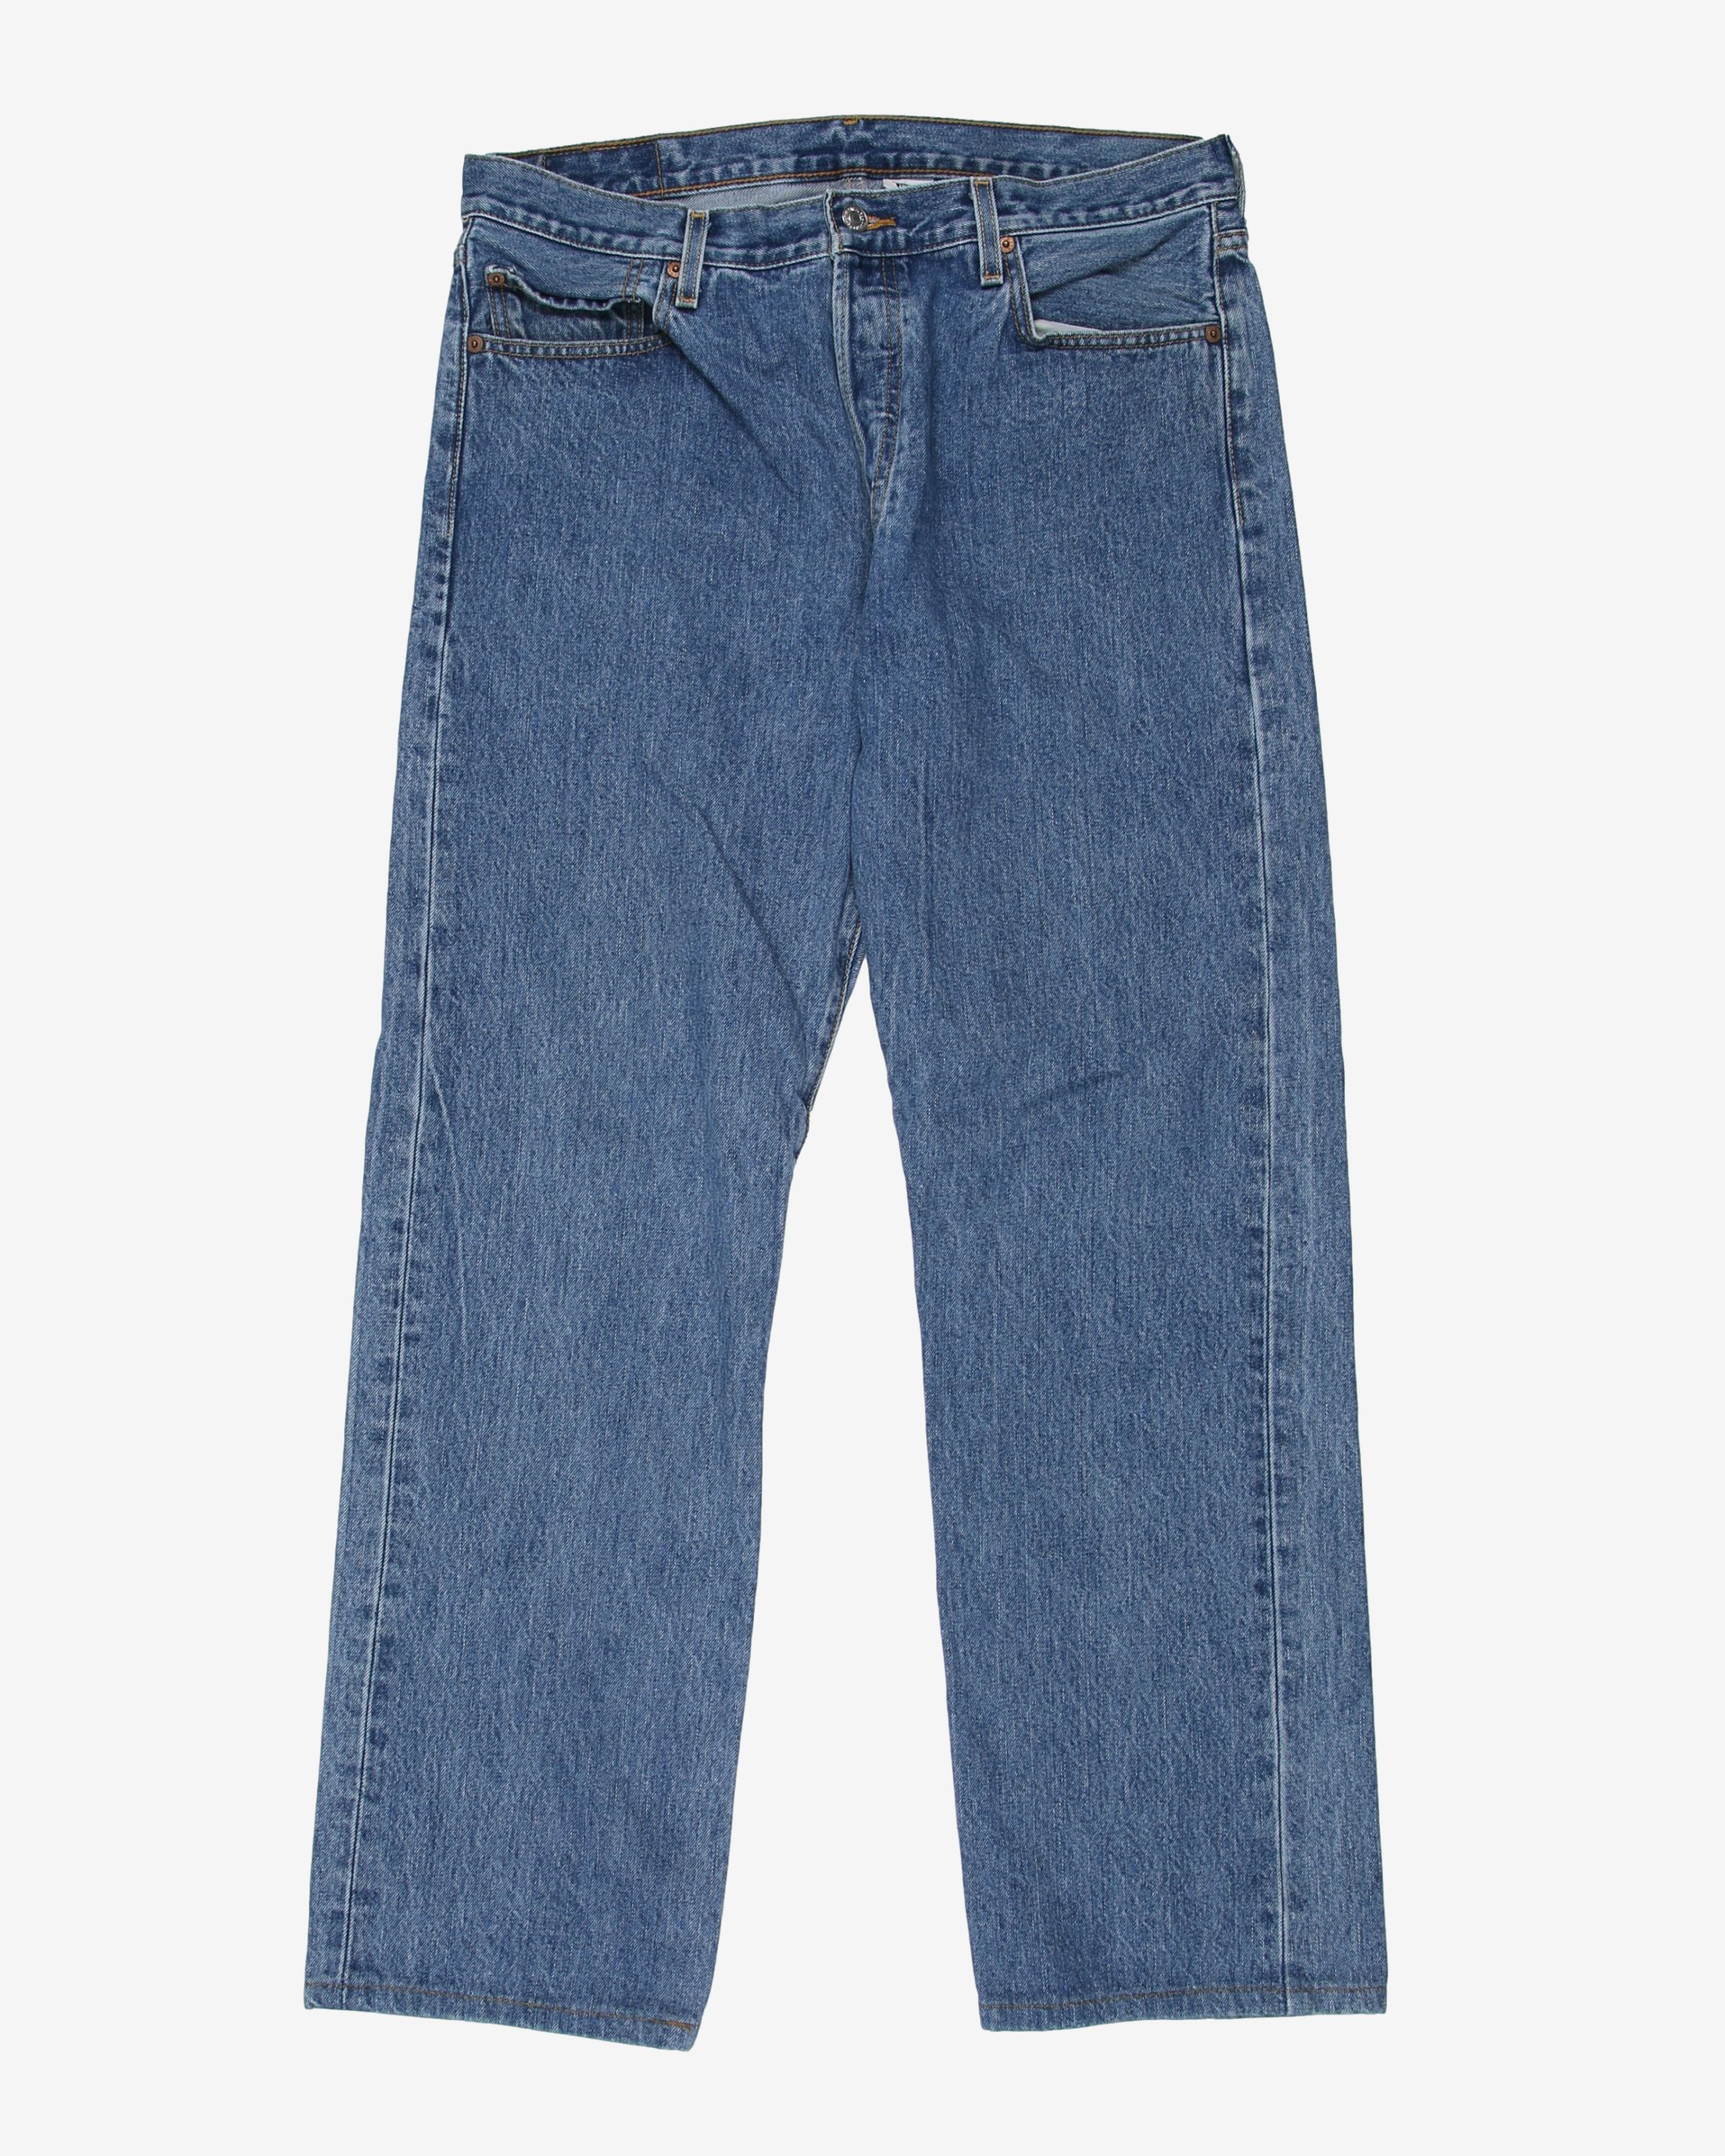 Levi's 501 Medium Wash Blue Casual Vintage 90s Denim Jeans - W36 L32